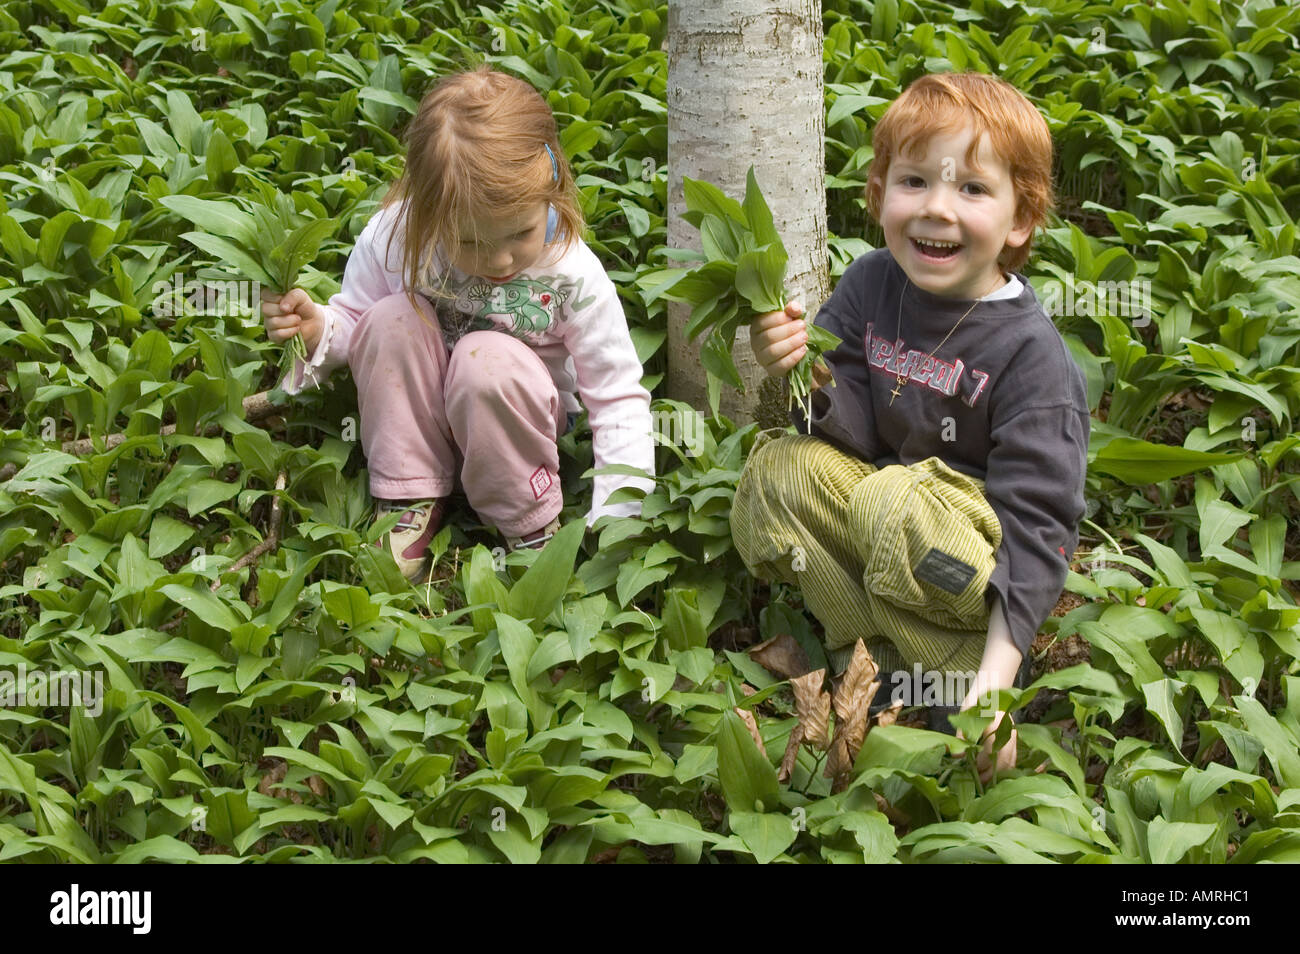 MR Mädchen und Junge pflücken im Wald Bärlauch Baerlauch Allium ursinum Bärenlauch MR girl and boy are picking ramson allium Stock Photo